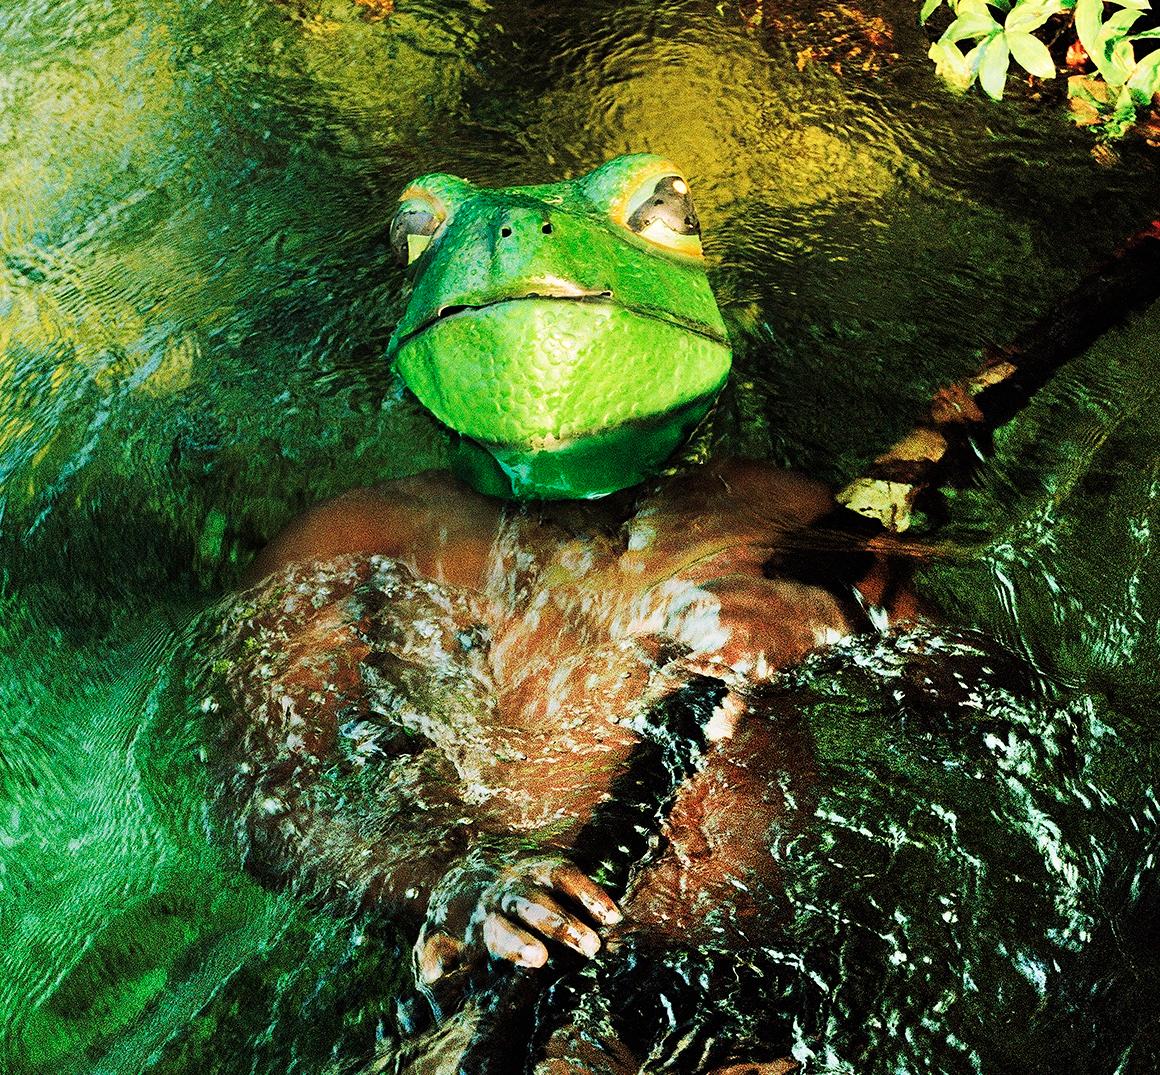 Frog du Congo - Édition de photographies d'animaux de paysage du 21e siècle - Photograph de Verena Prenner